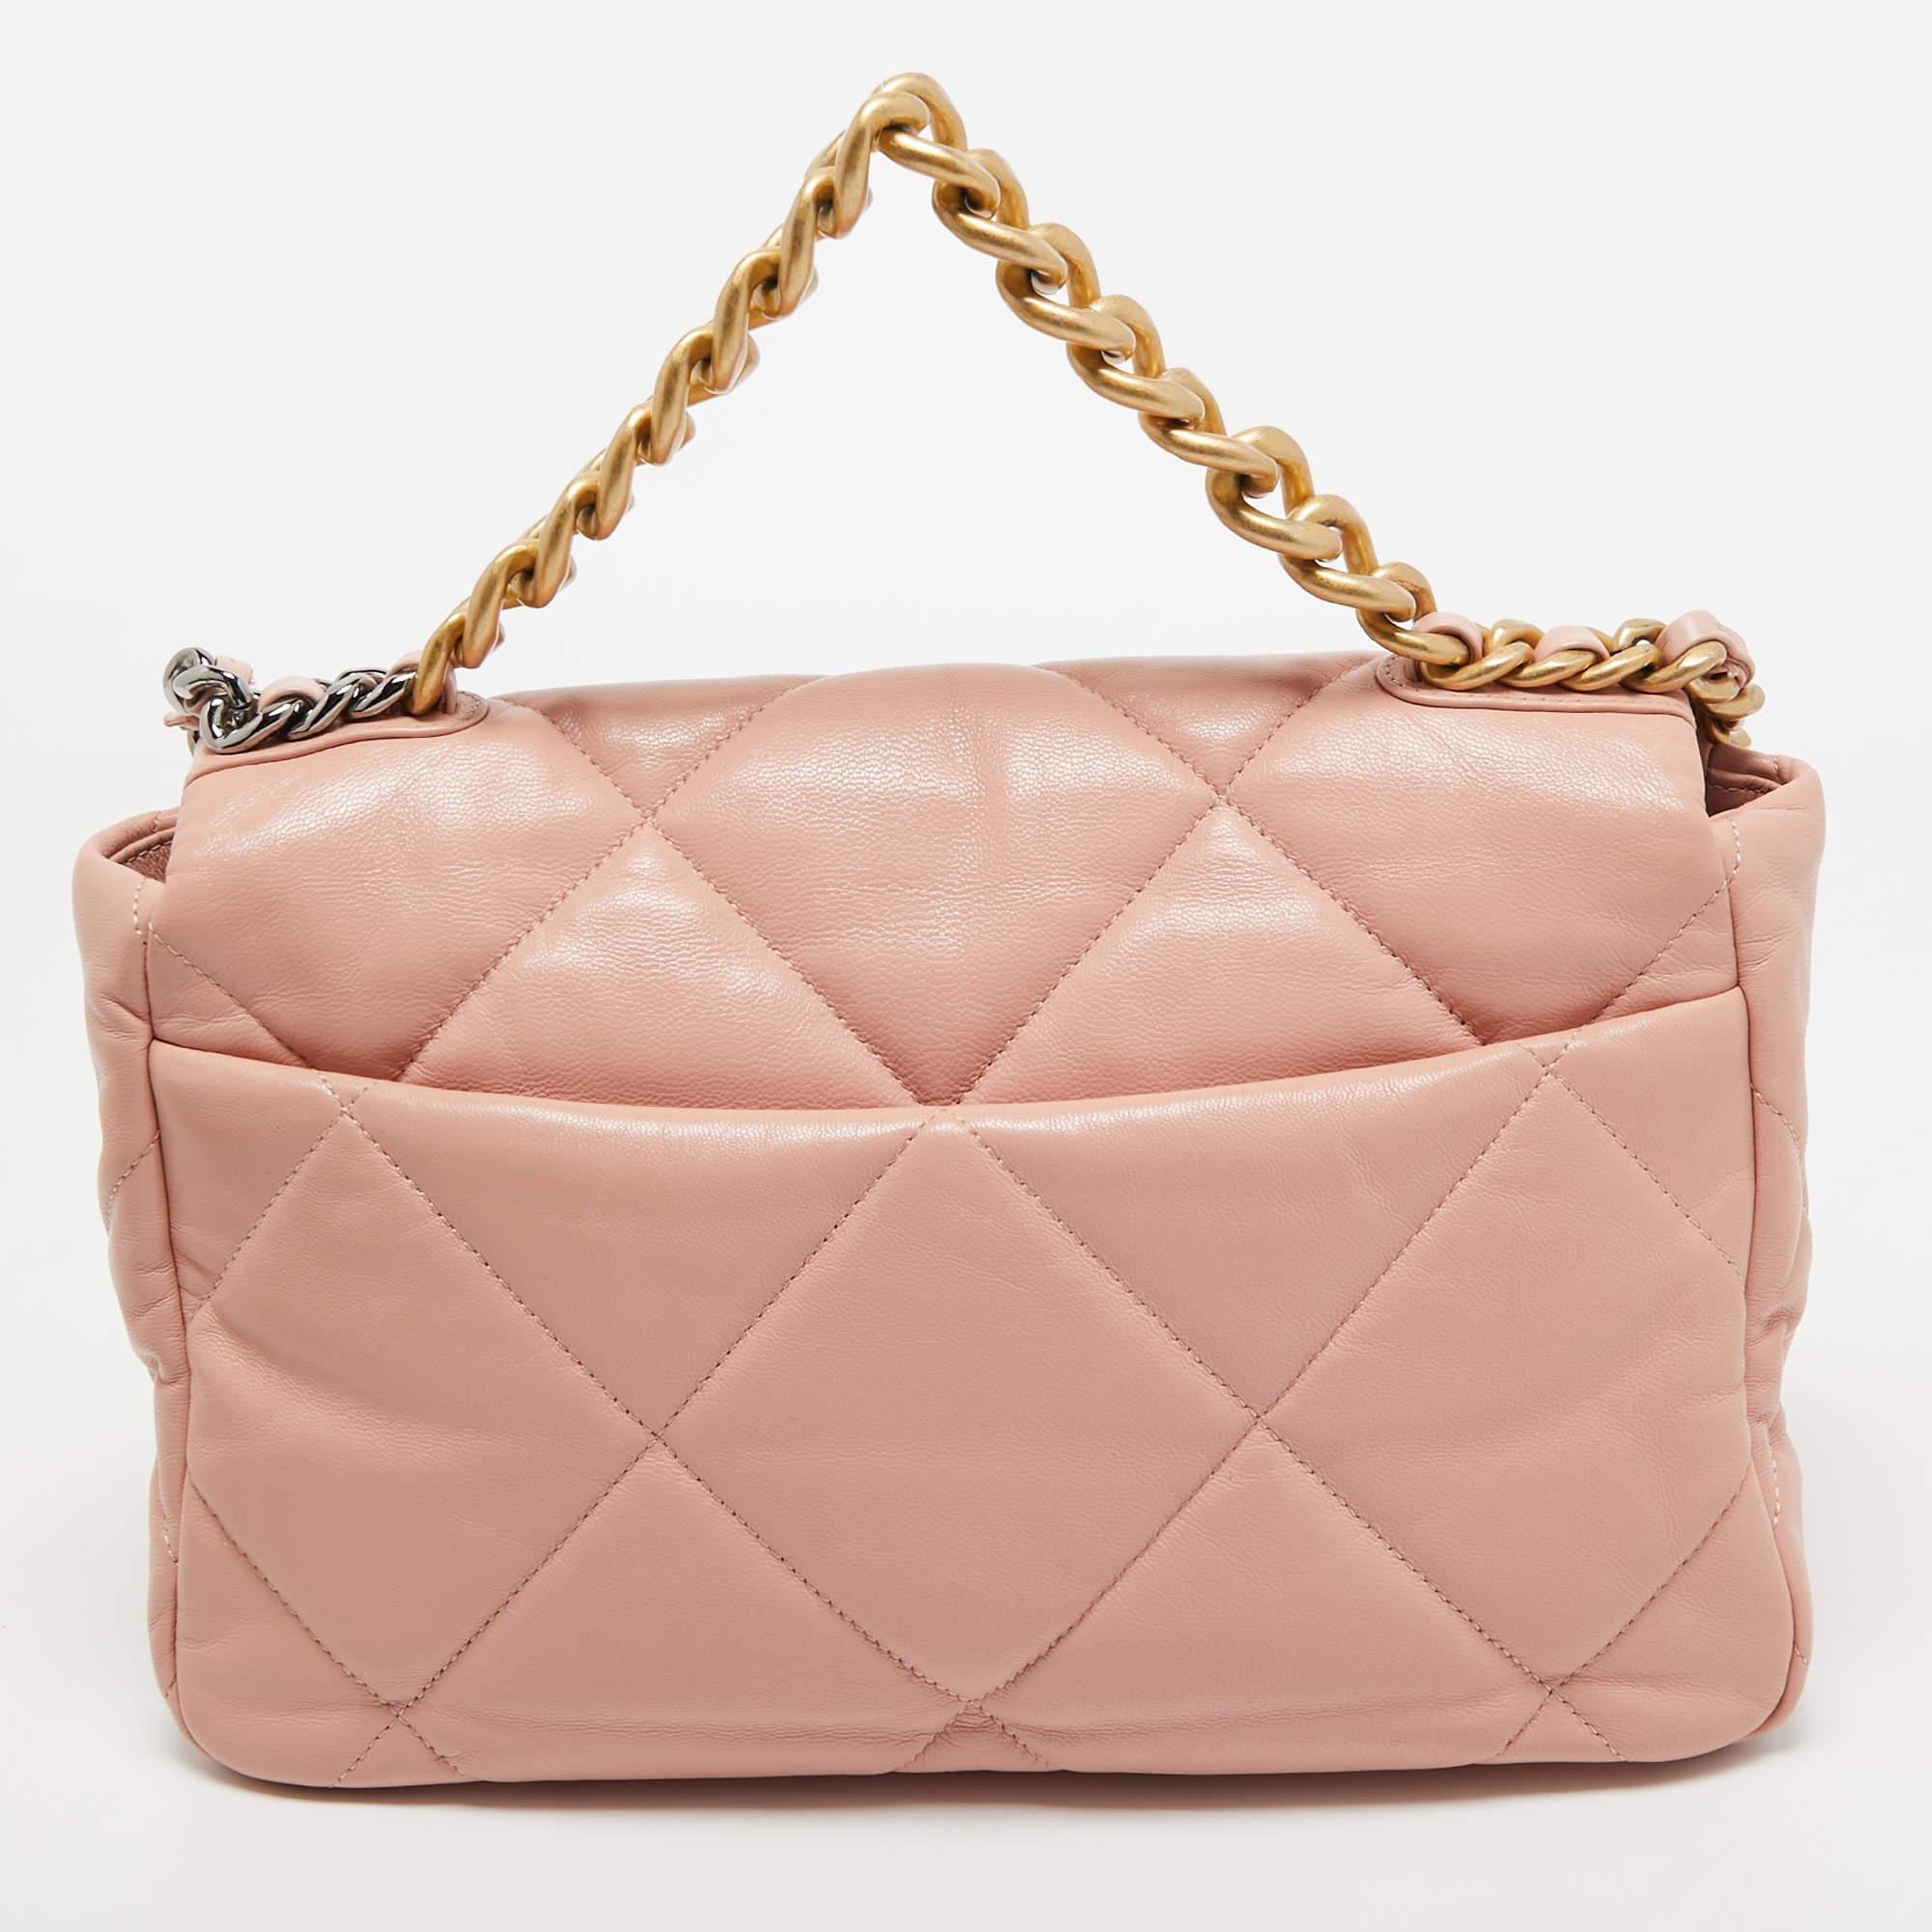 La maison Chanel propose ce magnifique sac à rabat 19 en rose pour vous aider à créer des éditions de style intemporelles chaque saison. Fabriquée avec des matériaux de qualité, cette pièce vous durera longtemps.

Comprend : Sac à poussière